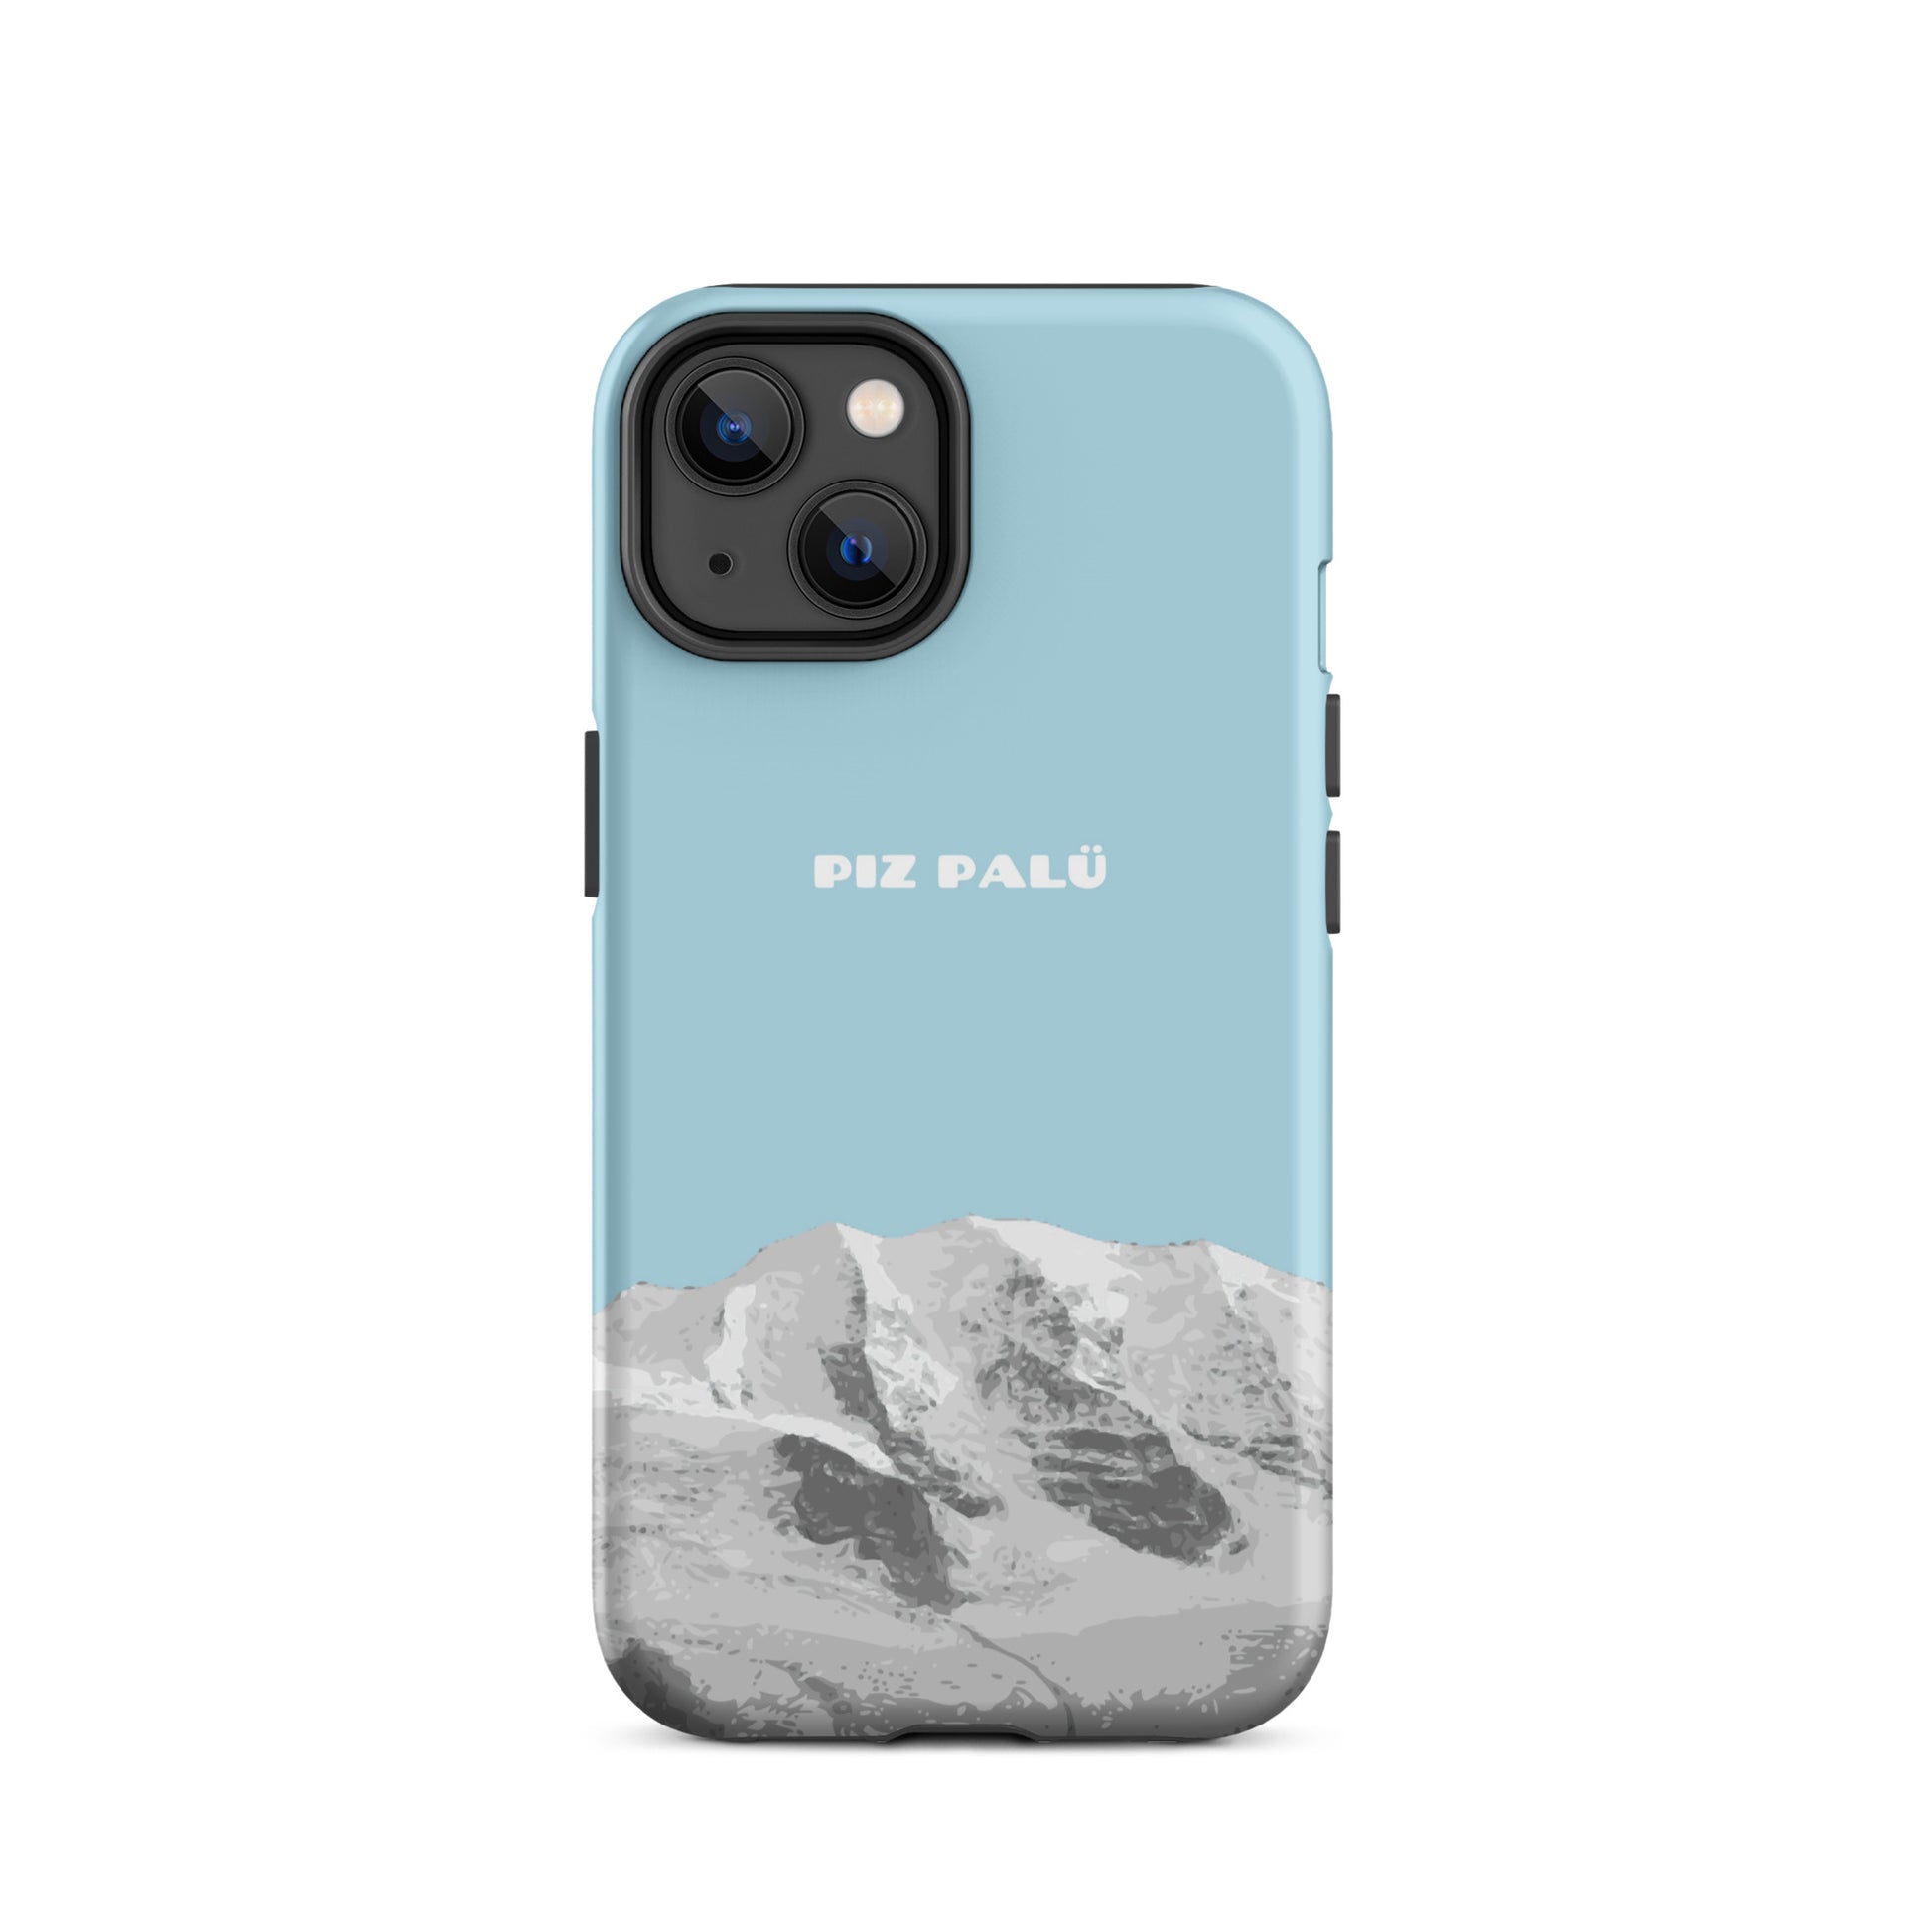 Hülle für das iPhone 14 von Apple in der Farbe Hellblau, dass den Piz Palü in Graubünden zeigt.